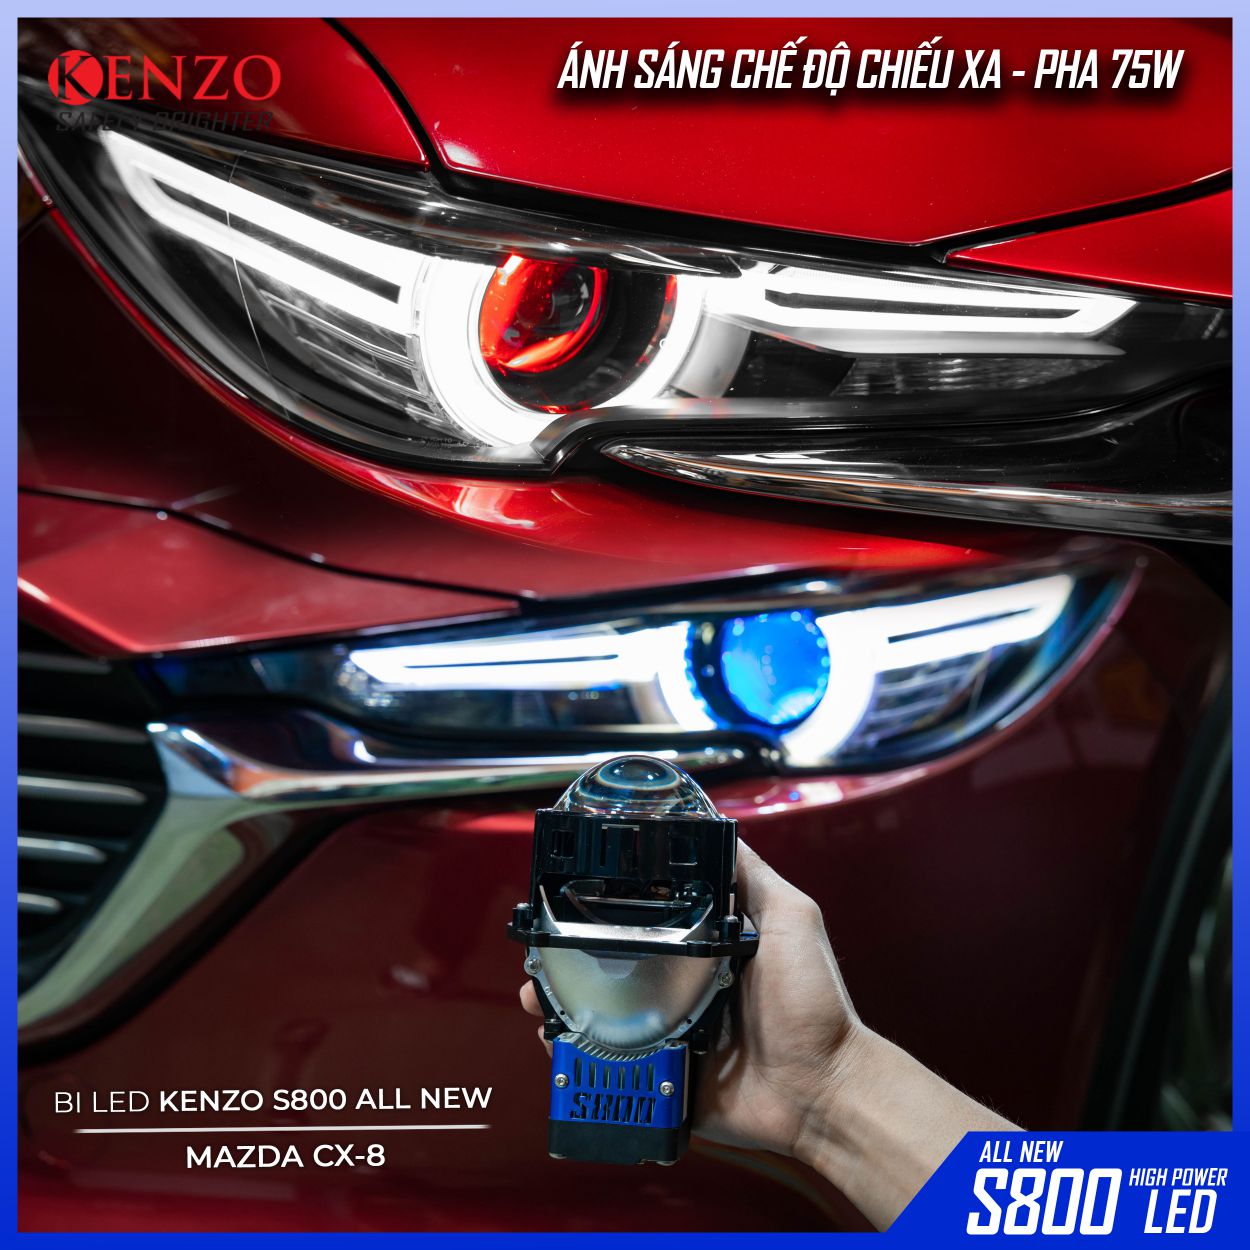 Mazda CX-8 Nâng cấp ánh sáng với siêu phẩm Bi Led S800 thế hệ mới và Led mắt quỷ